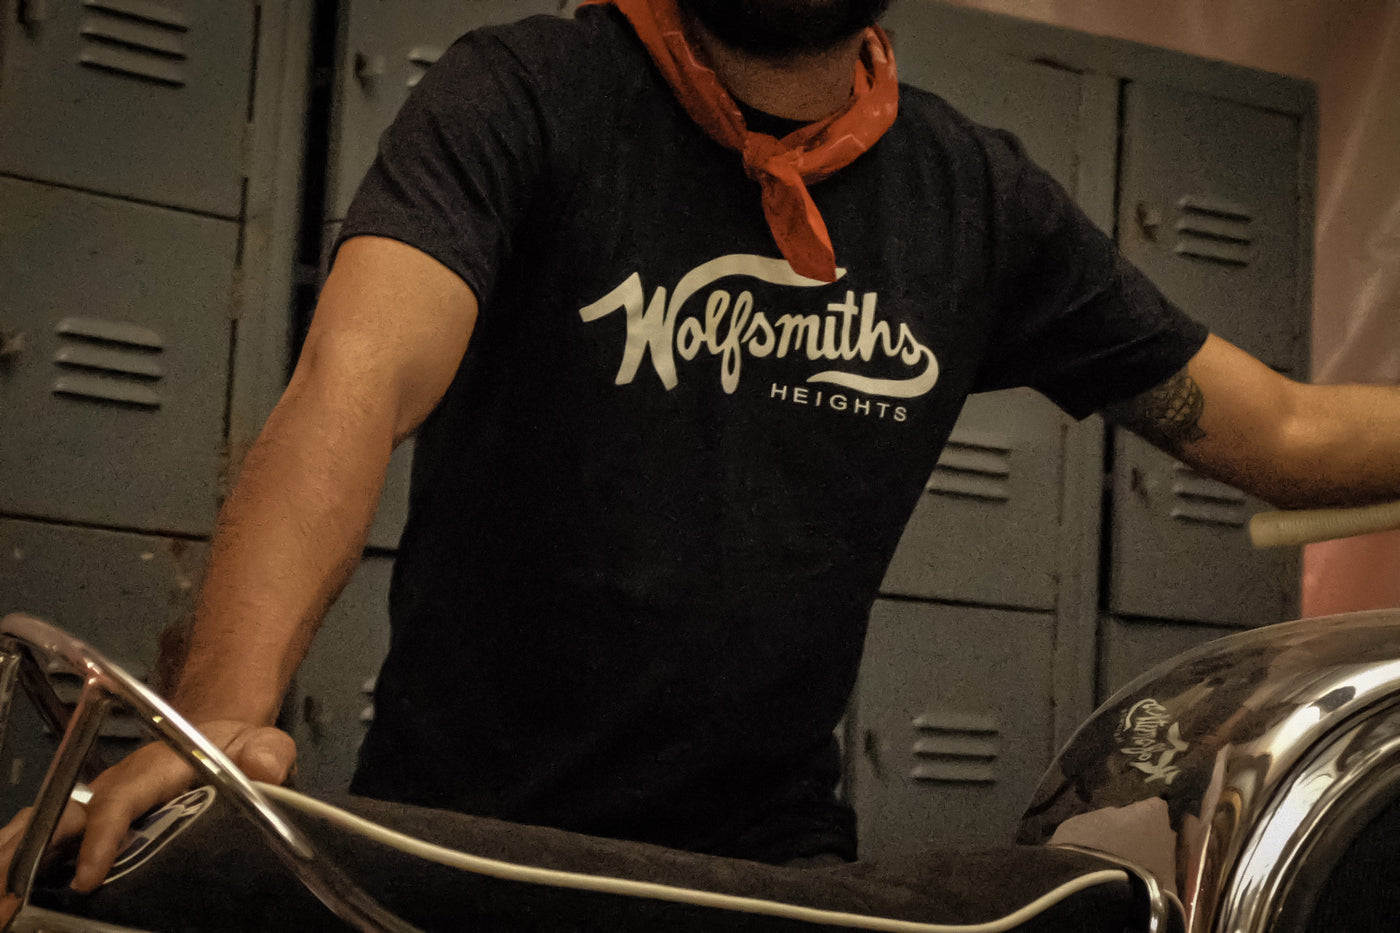 Wolfsmiths Black T-Shirt | Wolfsmiths Heights